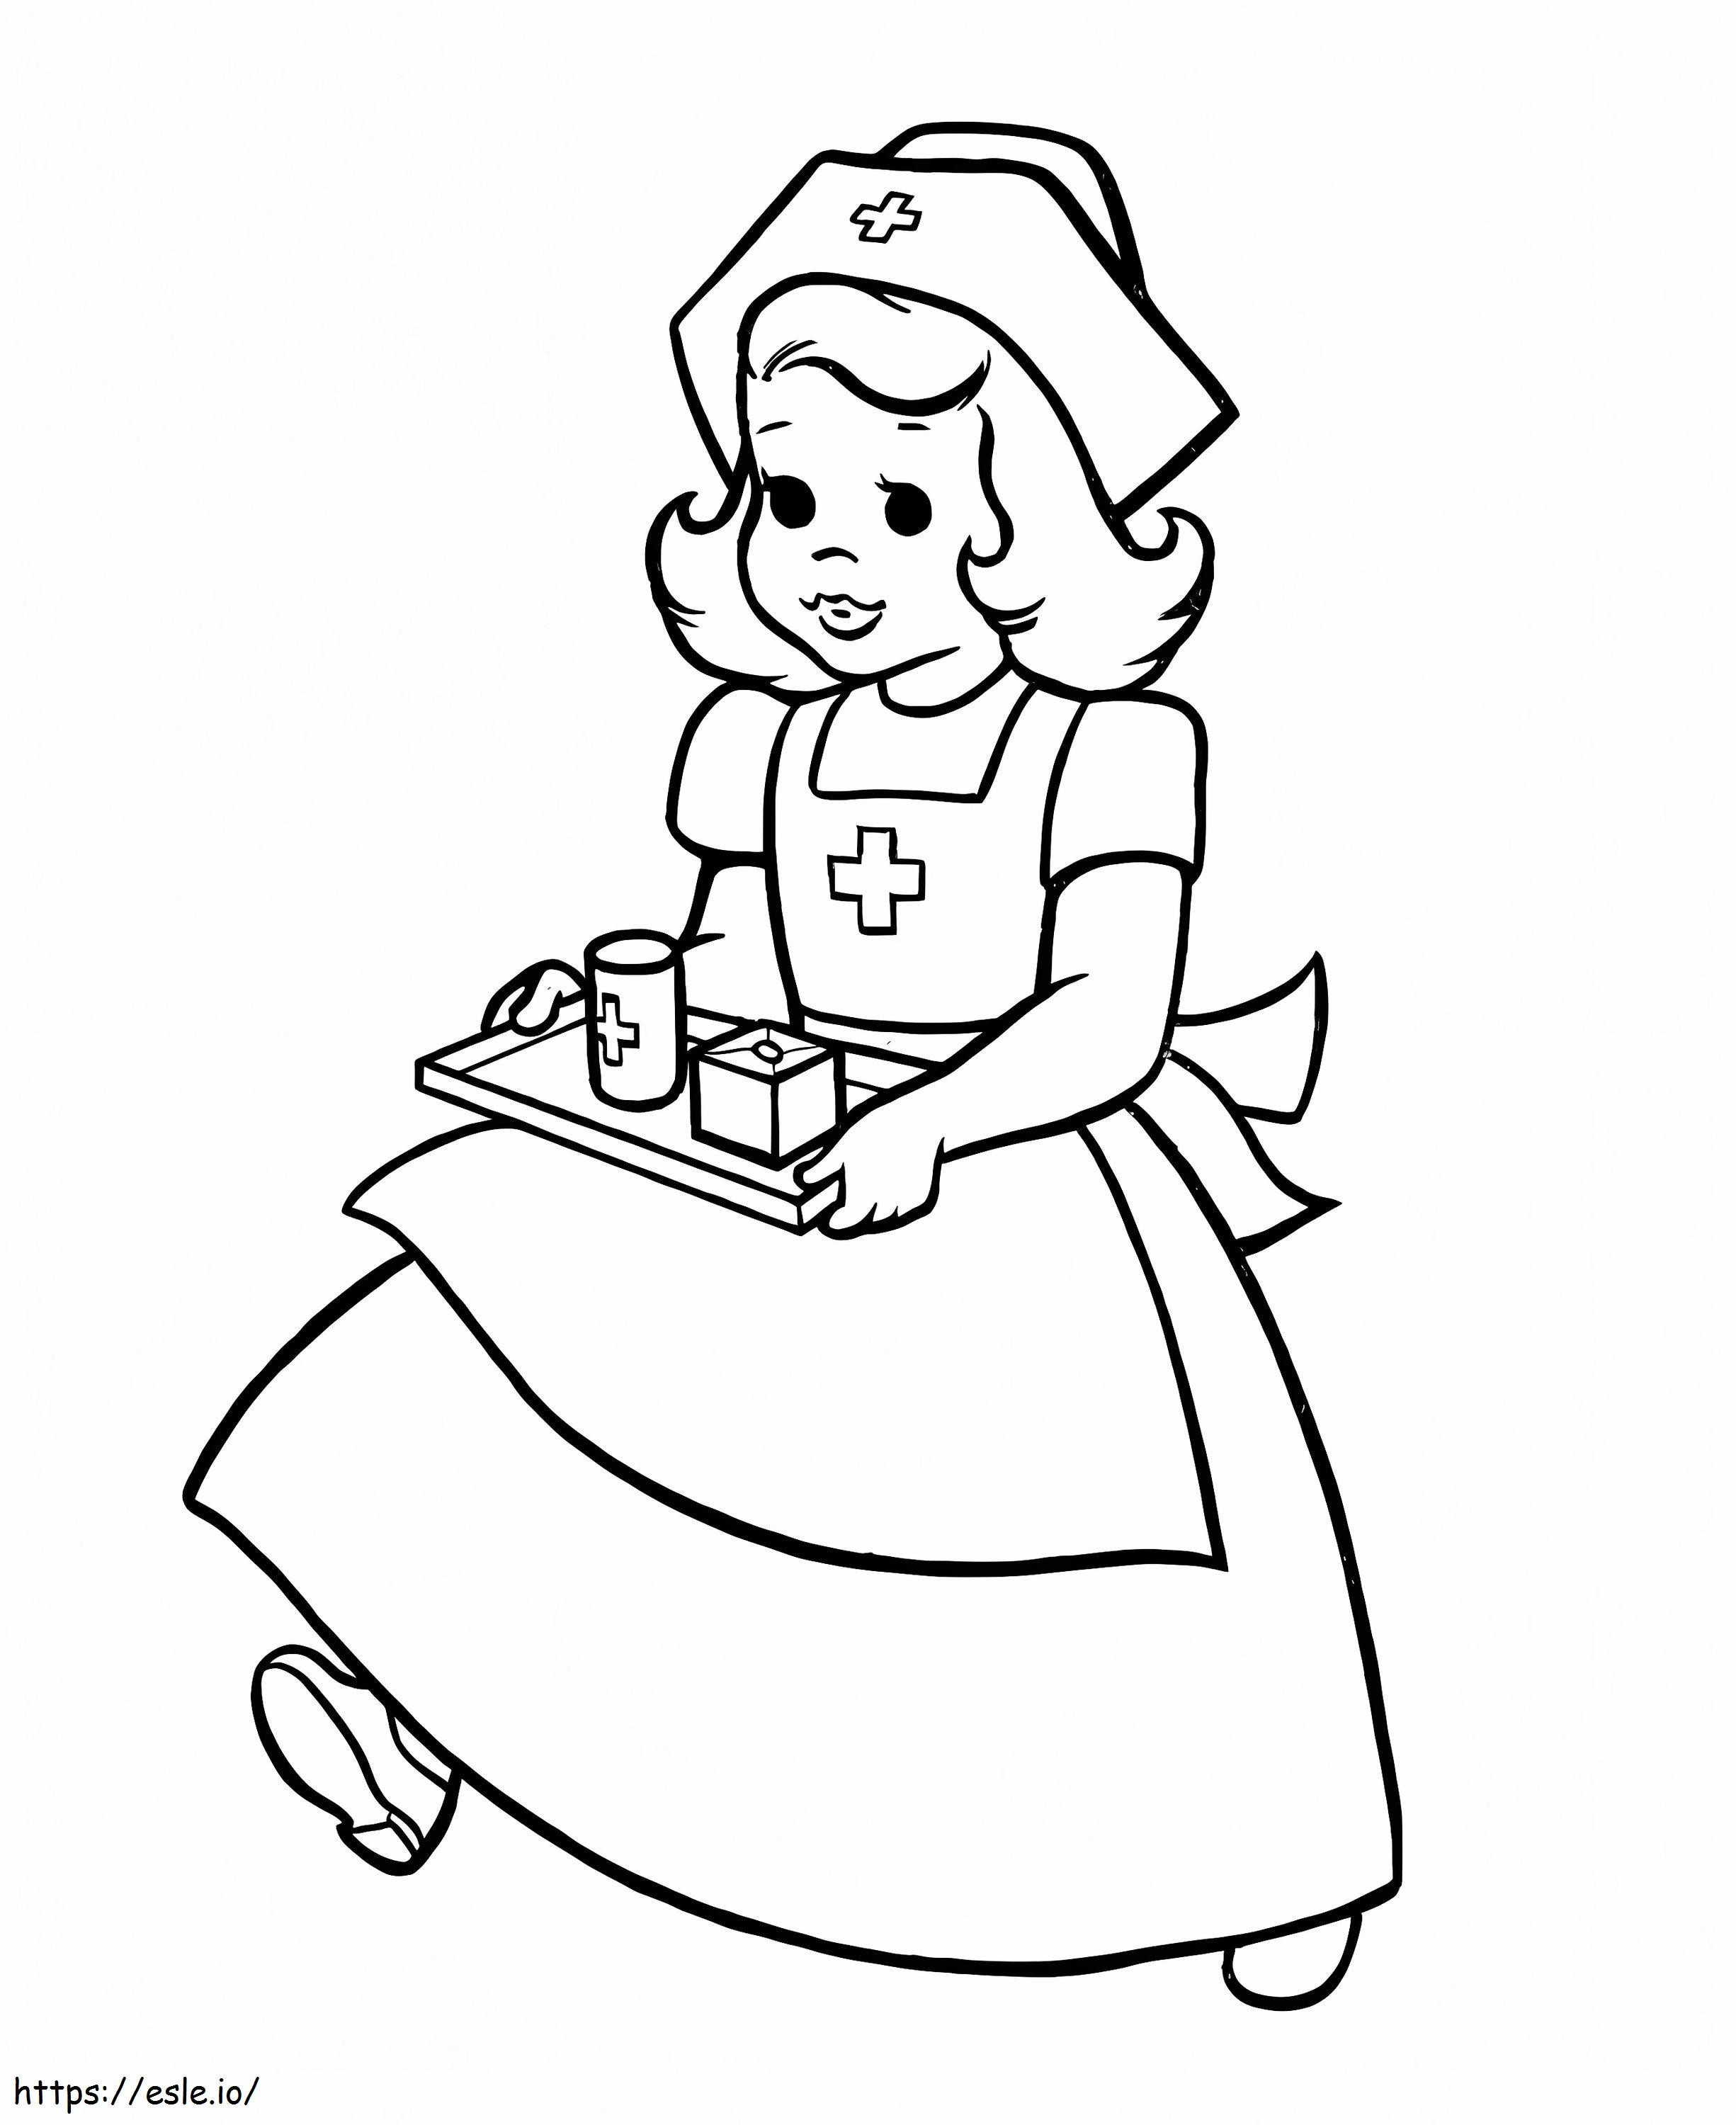 Cute Nurse coloring page